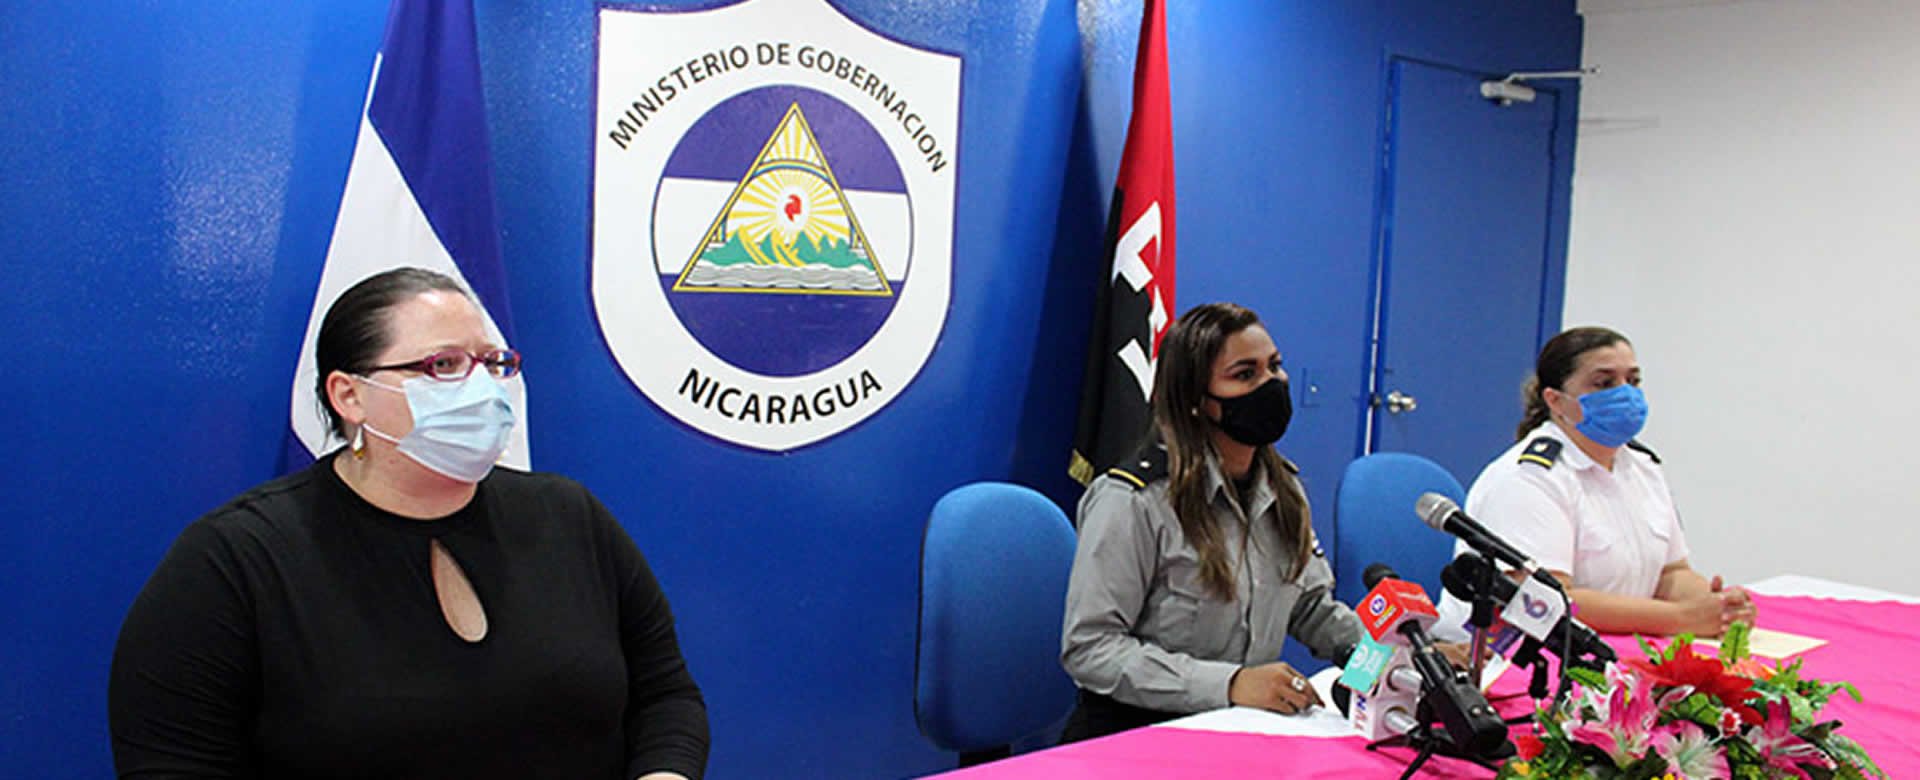 MIGOB detalla servicios brindados del 8 al 14 de agosto en Nicaragua